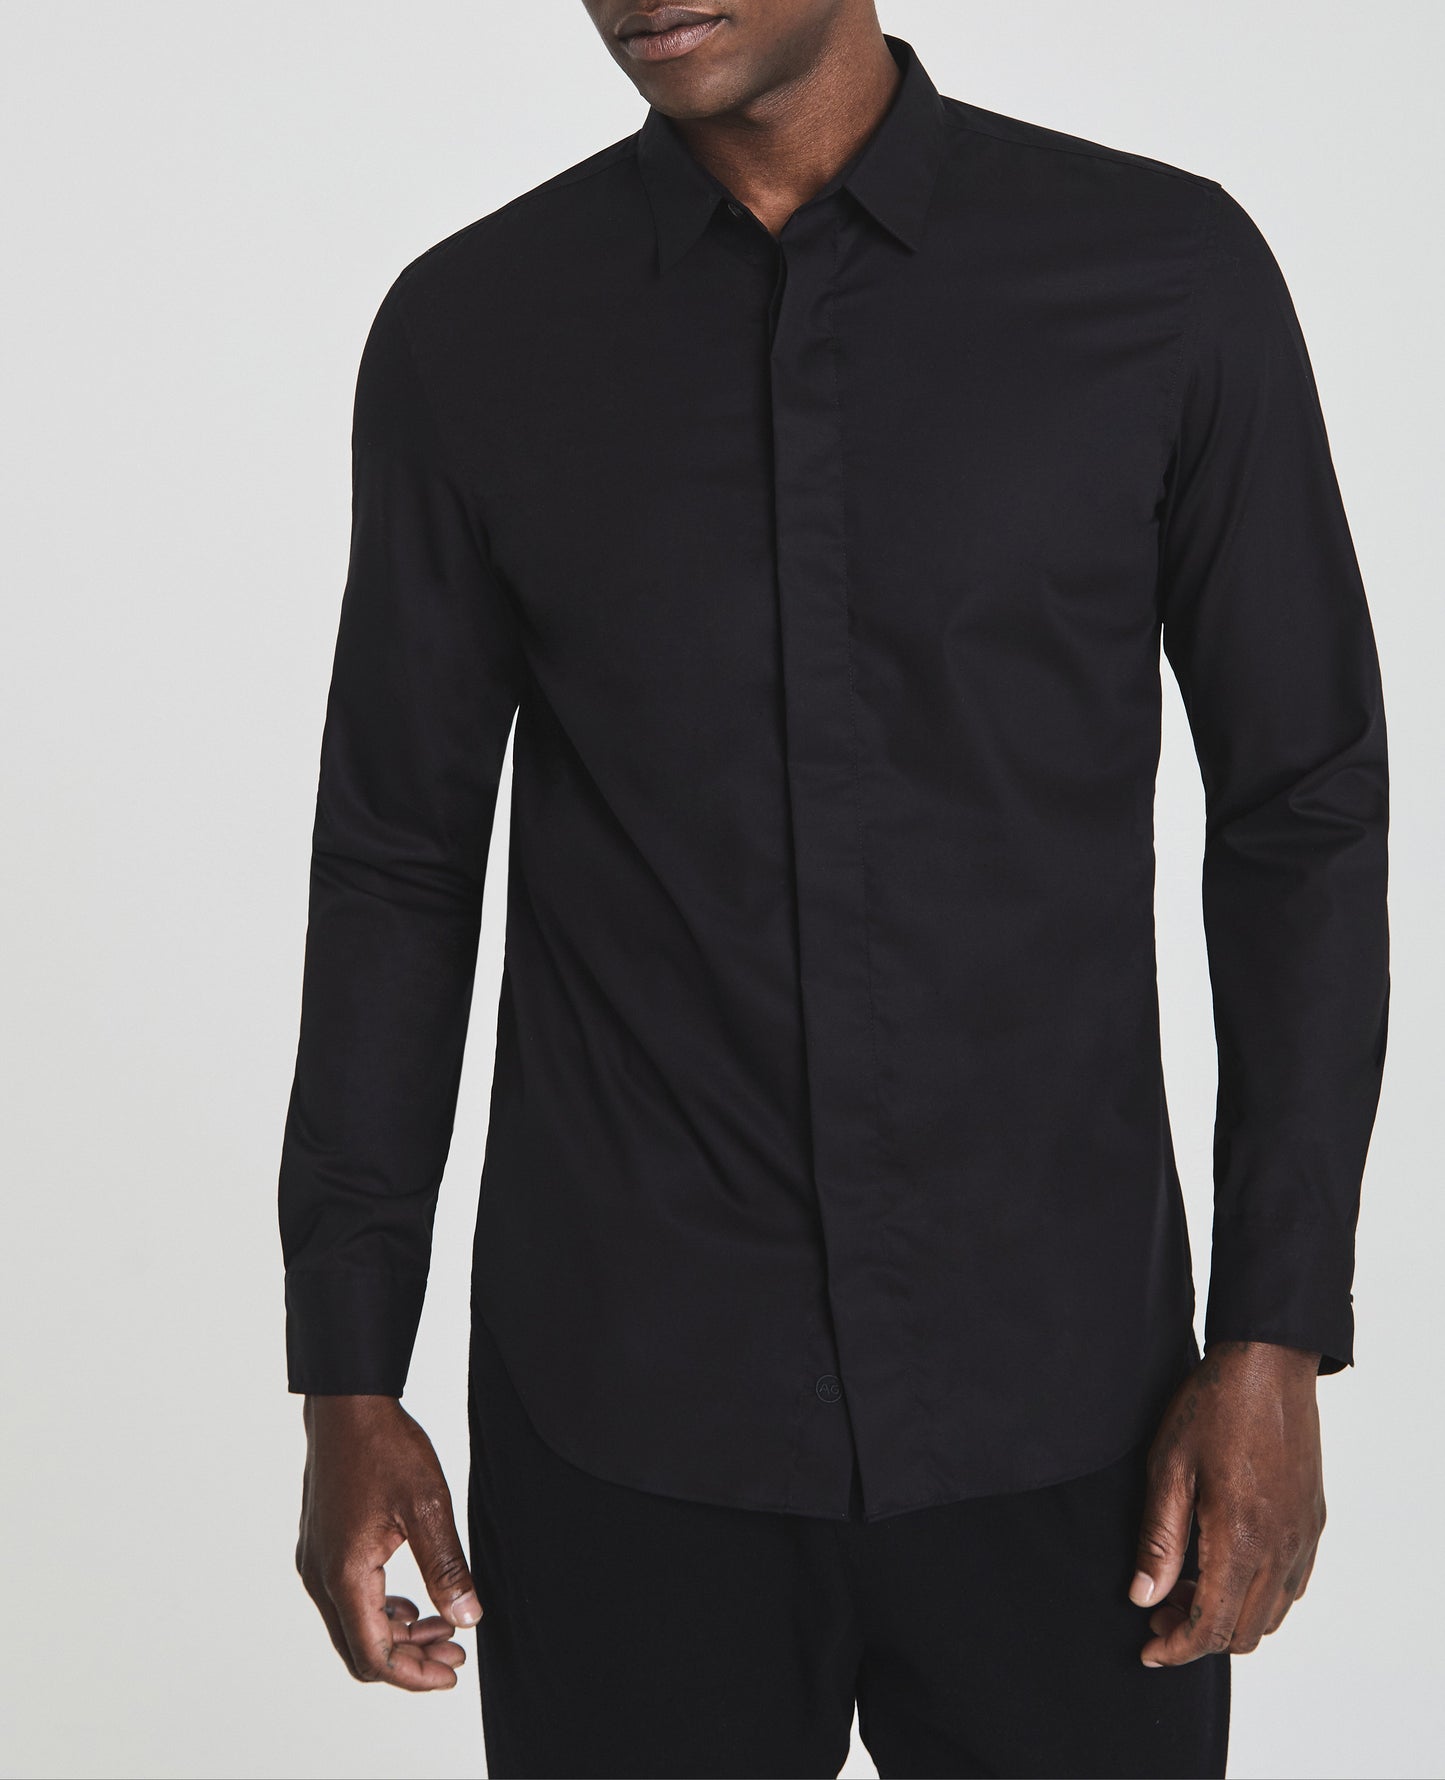 Ace Dress Shirt True Black Long Sleeve Shirt Men Tops Photo 1